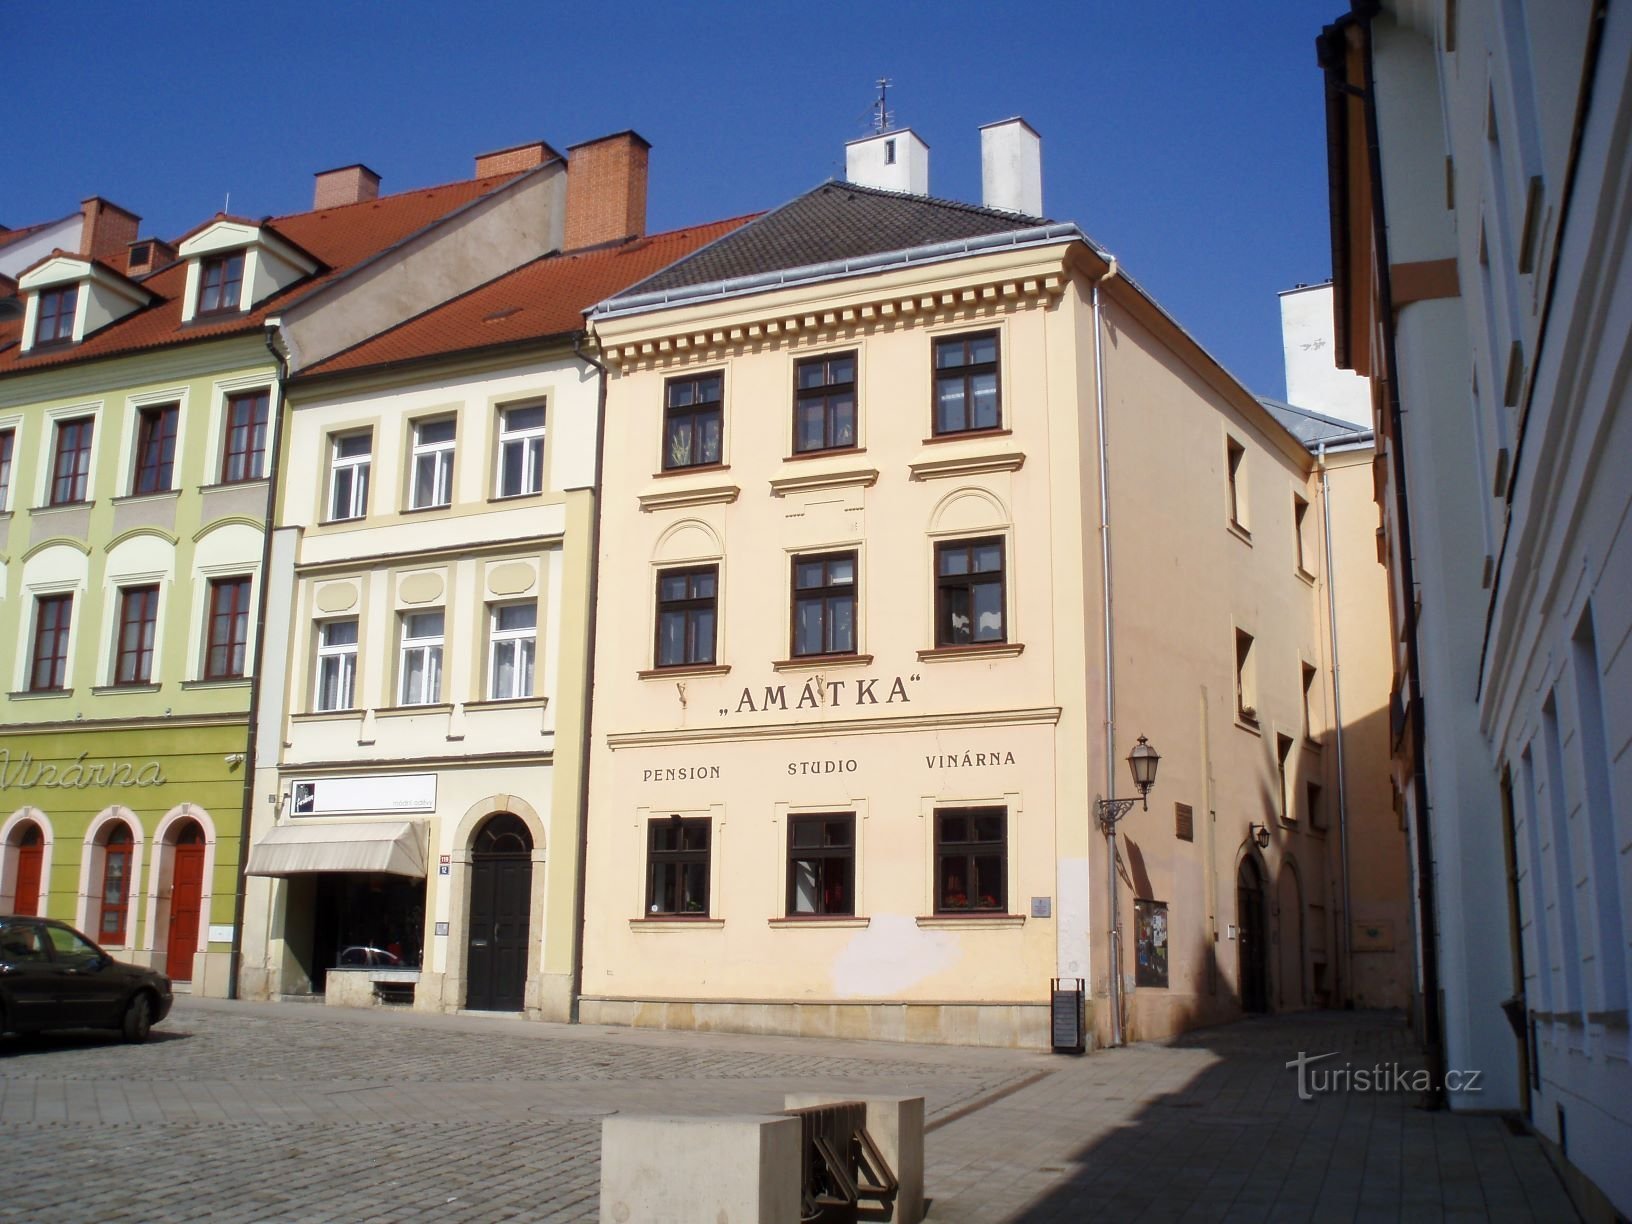 Malé náměstí No. 119-120 (Hradec Králové, 23.3.2012)